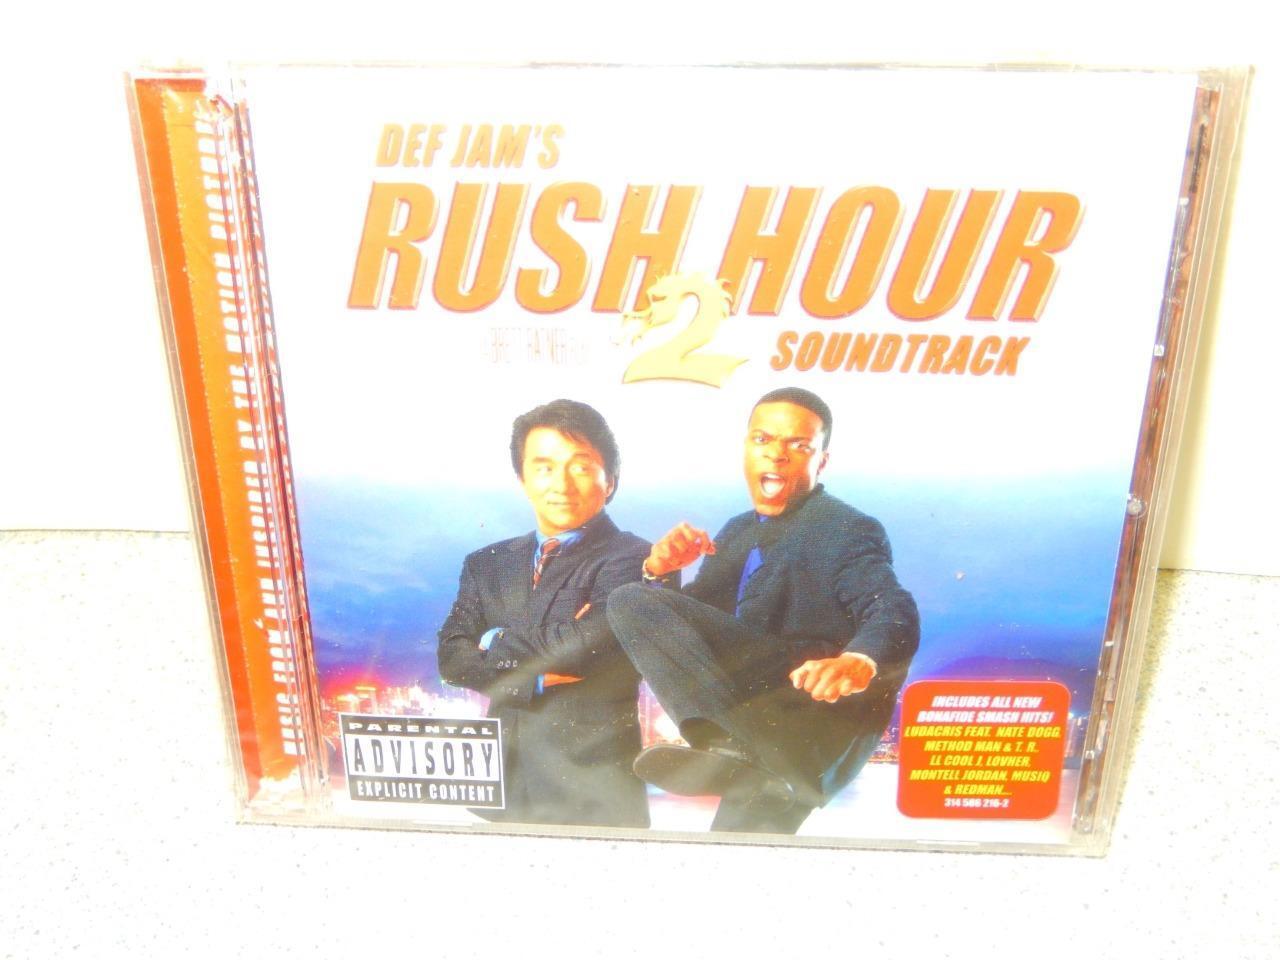 RUSH HOUR 2 SOUNDTRACK  CD- DEF JAM\'S  - VARIOUS ARTIST- 17 TRACKS-  NEW